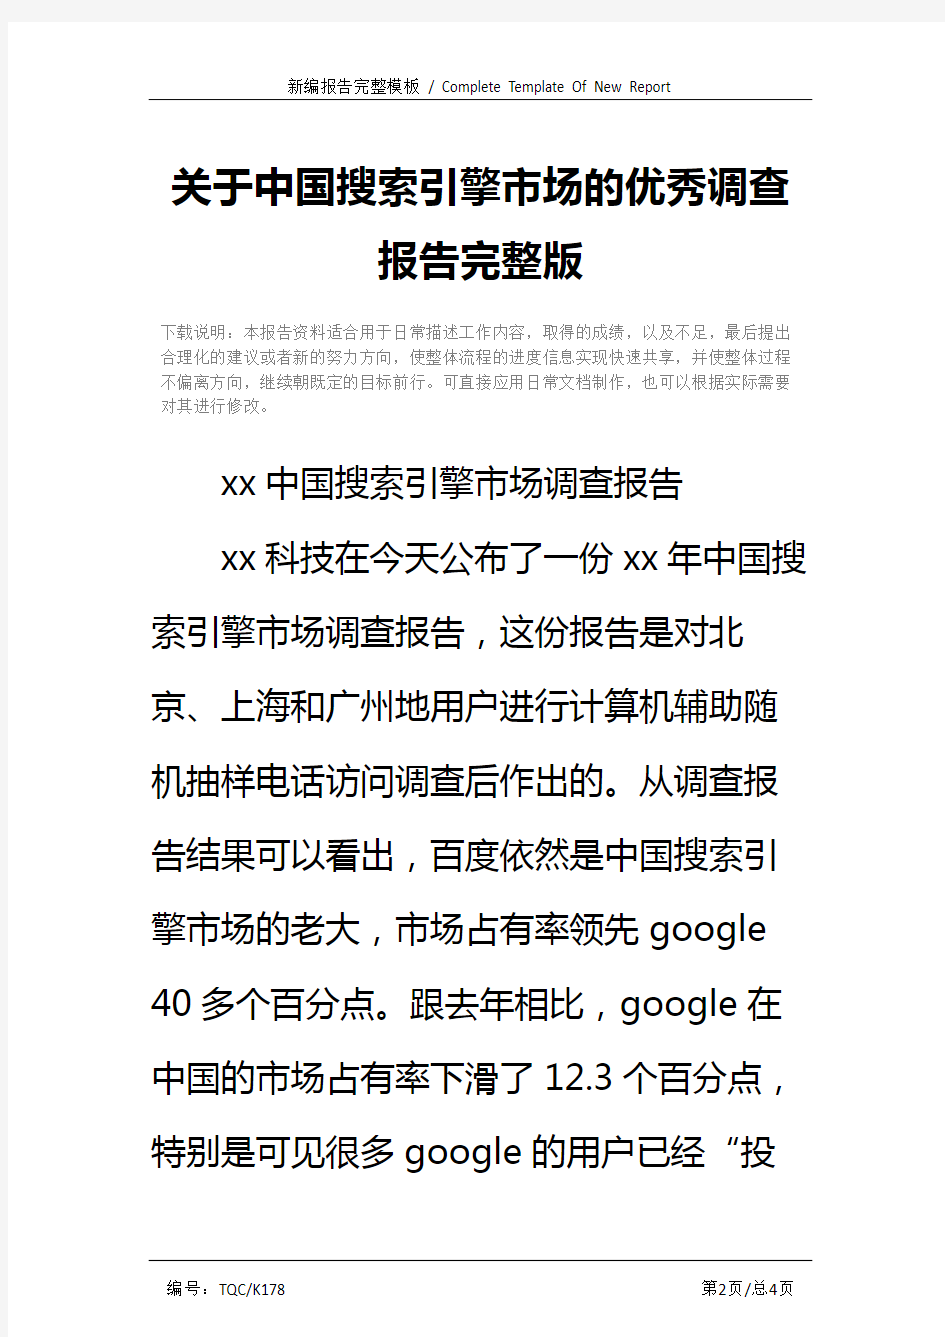 关于中国搜索引擎市场的优秀调查报告完整版